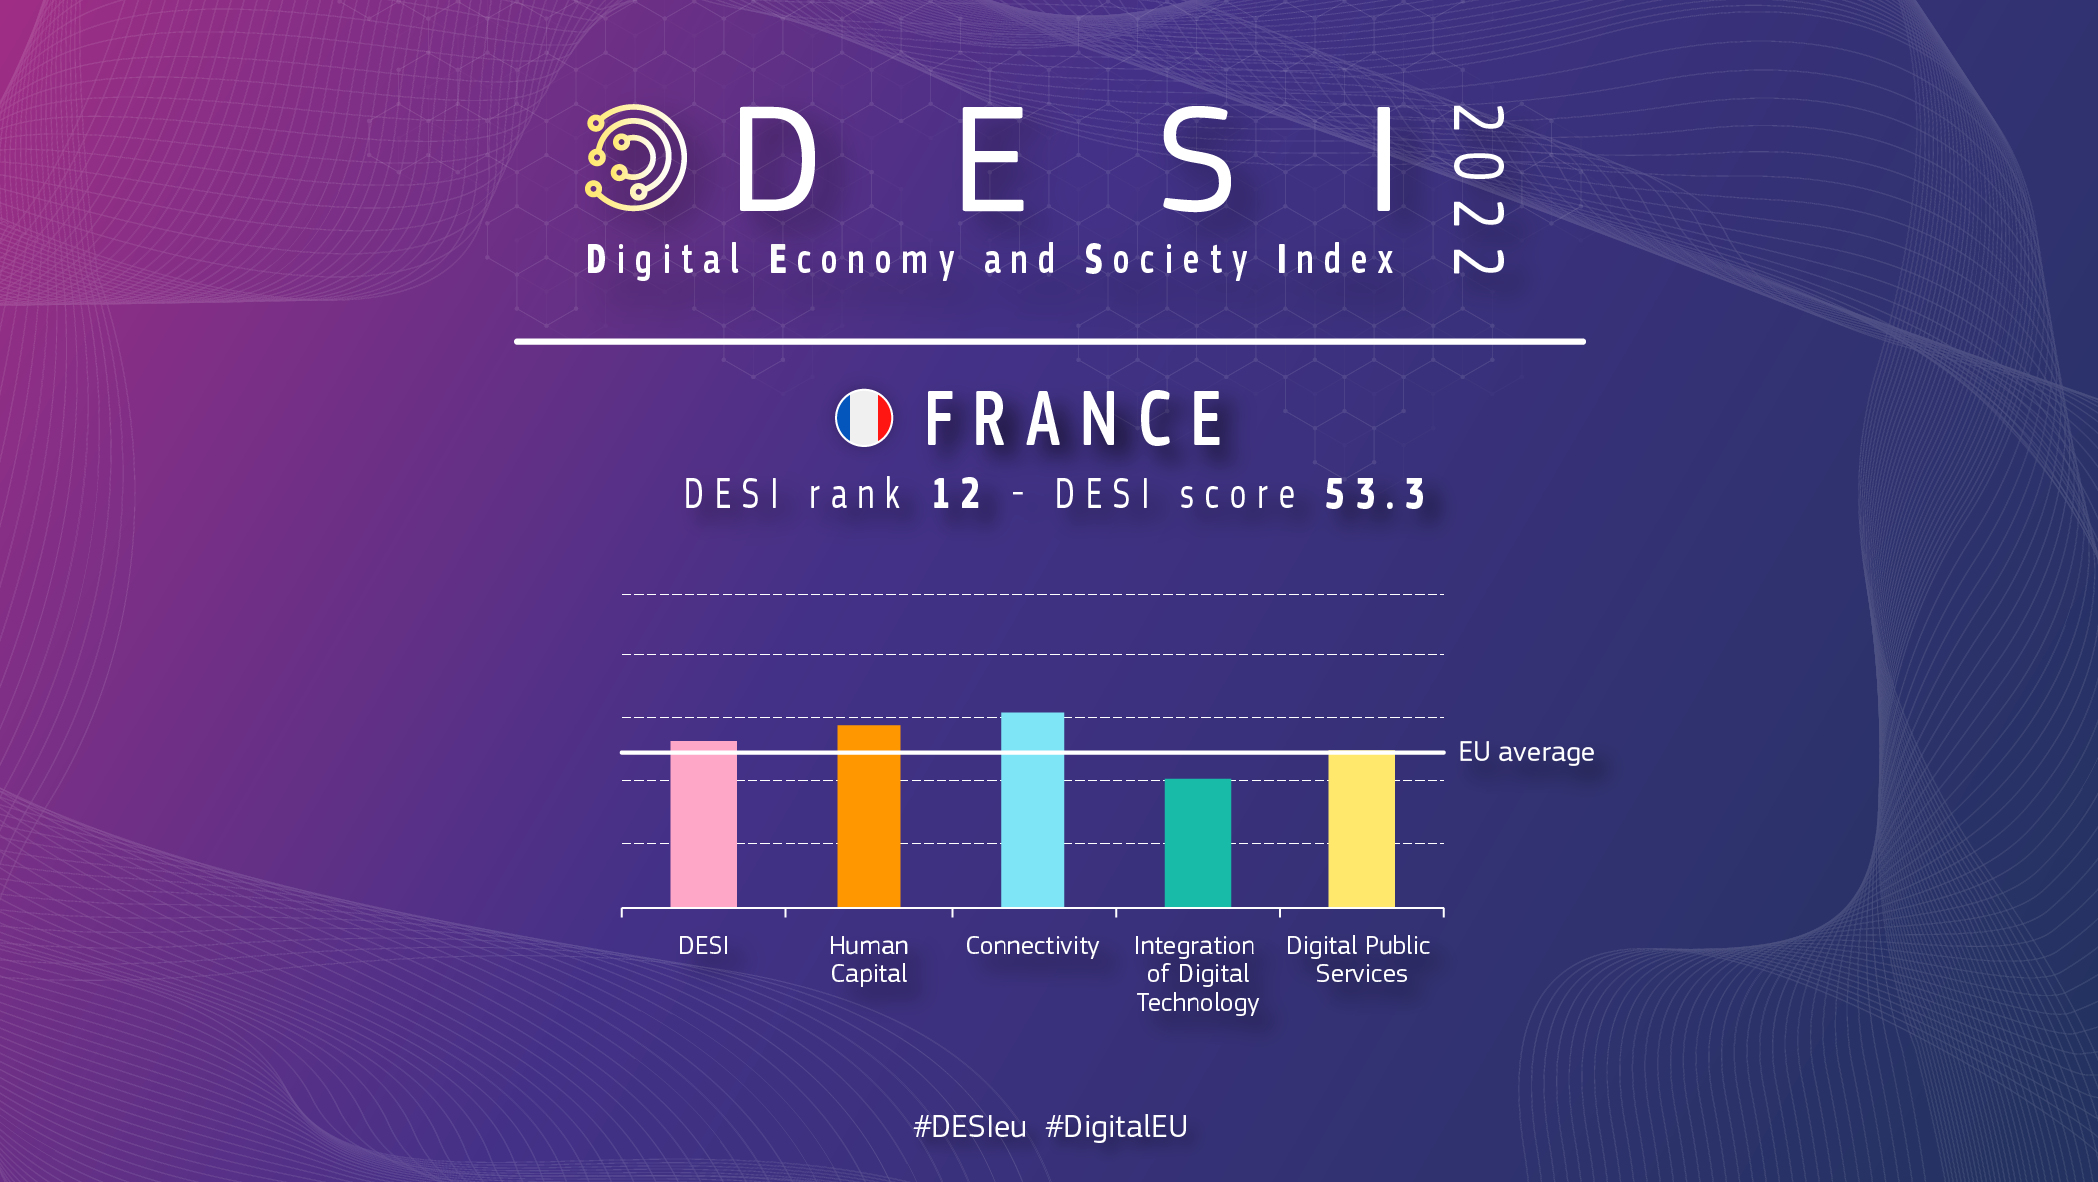 Grafisks pārskats par Franciju DESI, kurā vērtējums ir 12 un vērtējums 53,3